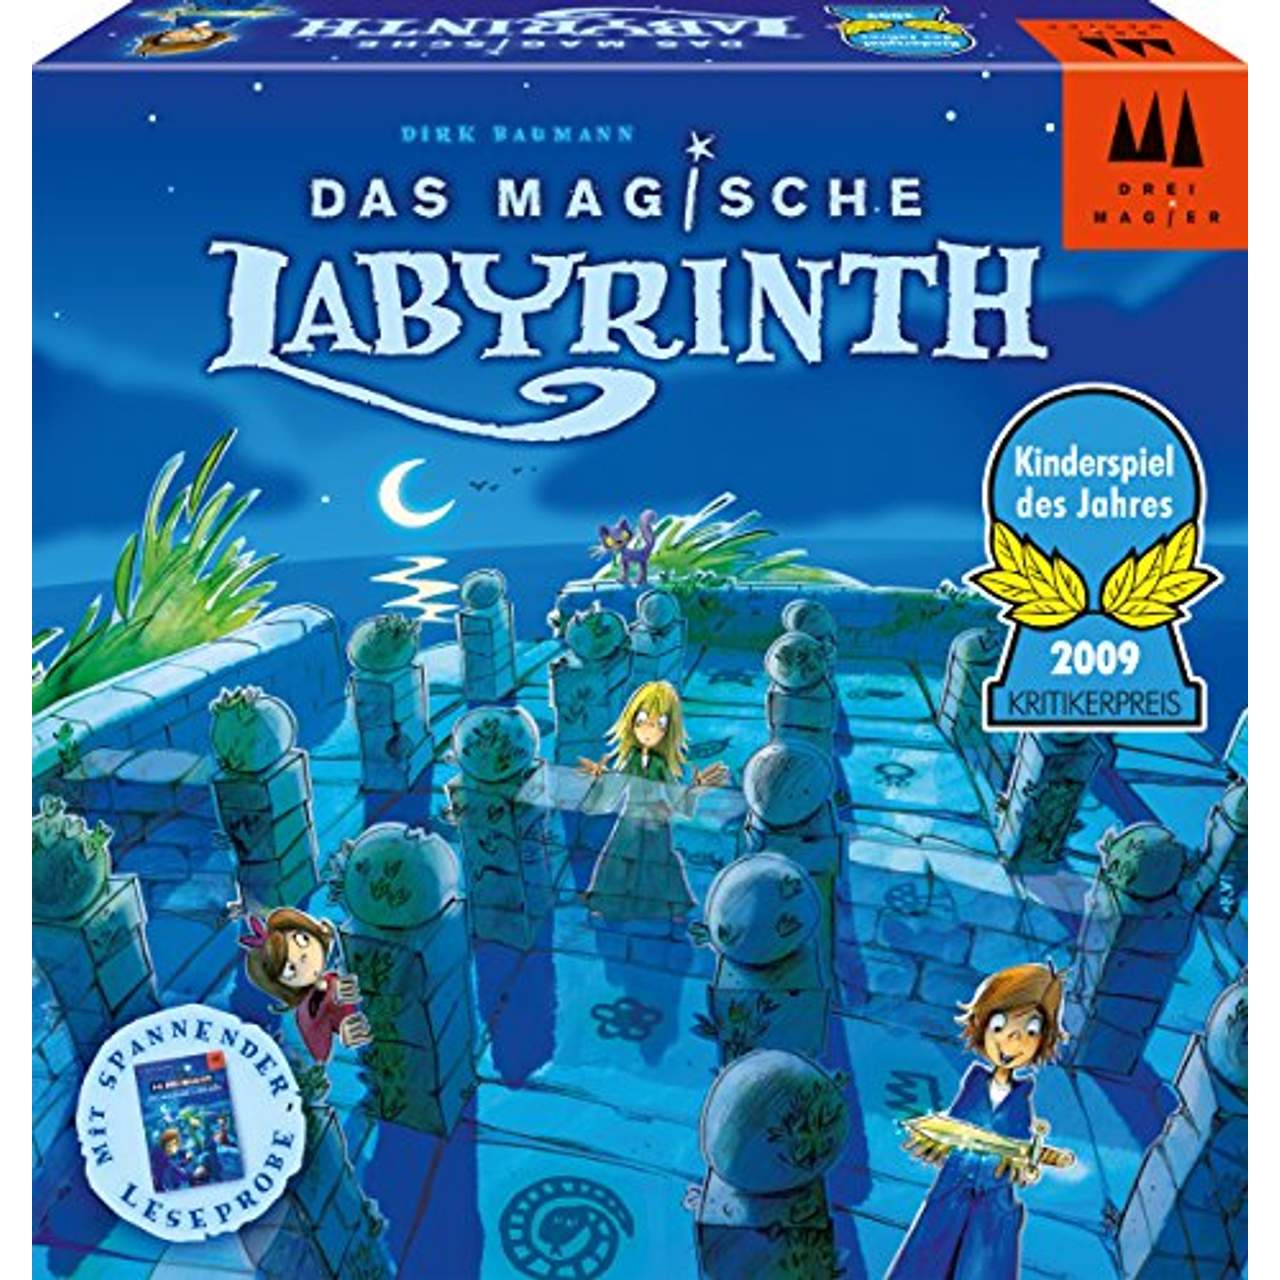 Das Magische Labyrinth, Kinderspiel des Jahres 2009